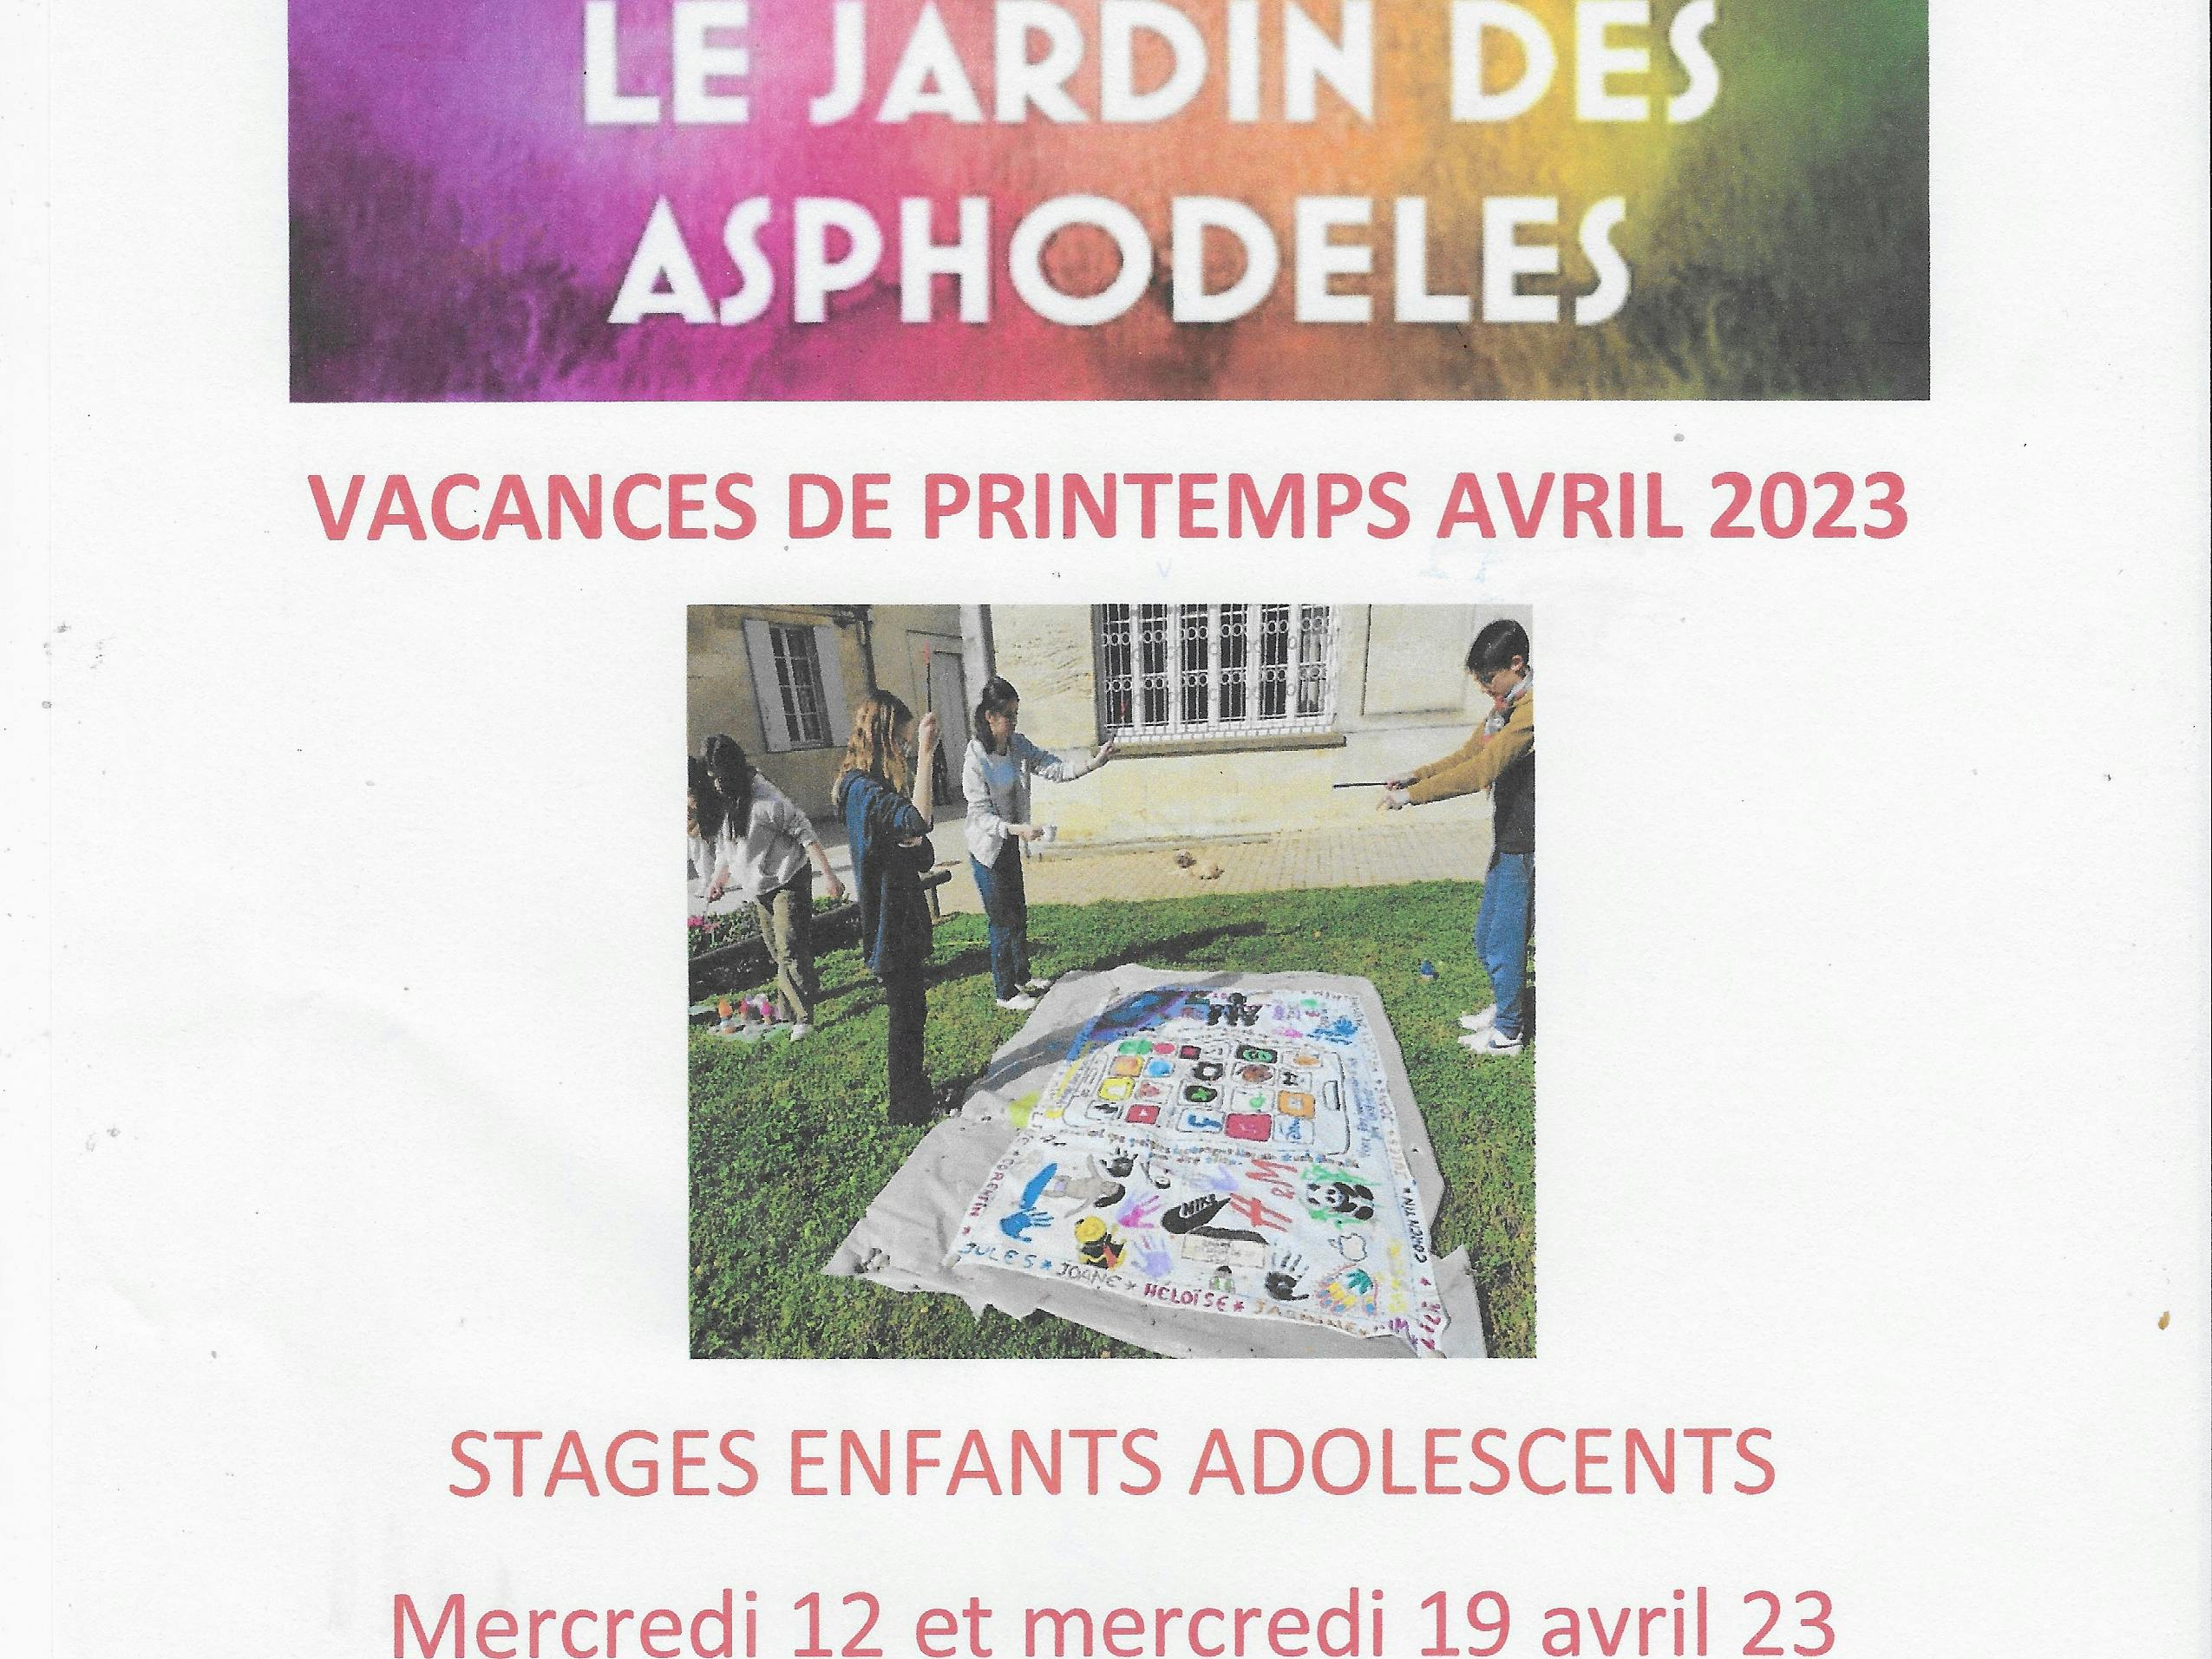 Stages de vacances avril 2023 avec LE JARDIN DES ASPHODELES.